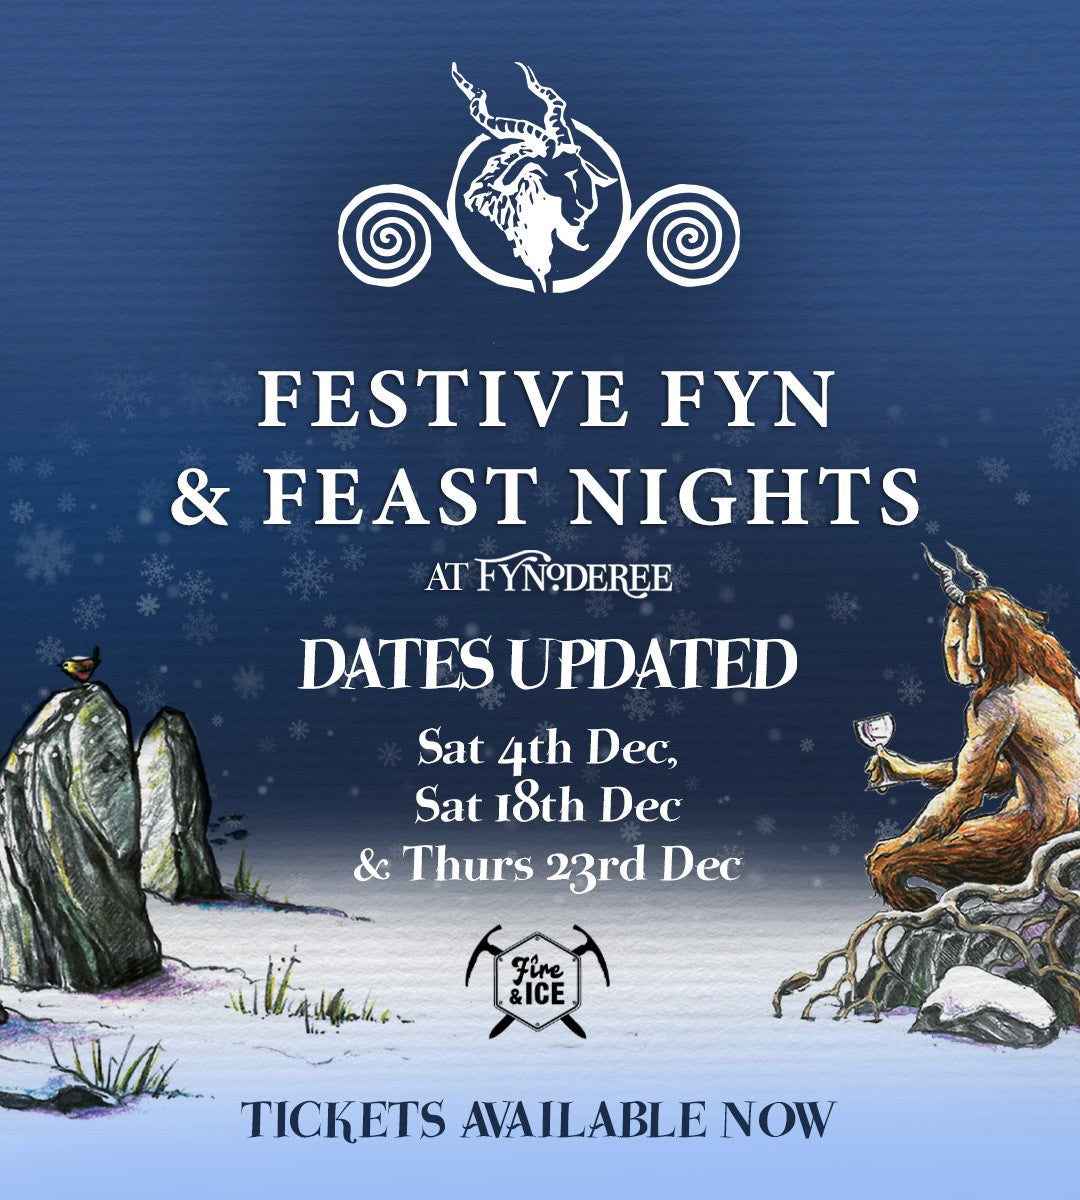 Festive Fyn & Feast Events - 4th, 18th & 23rd December